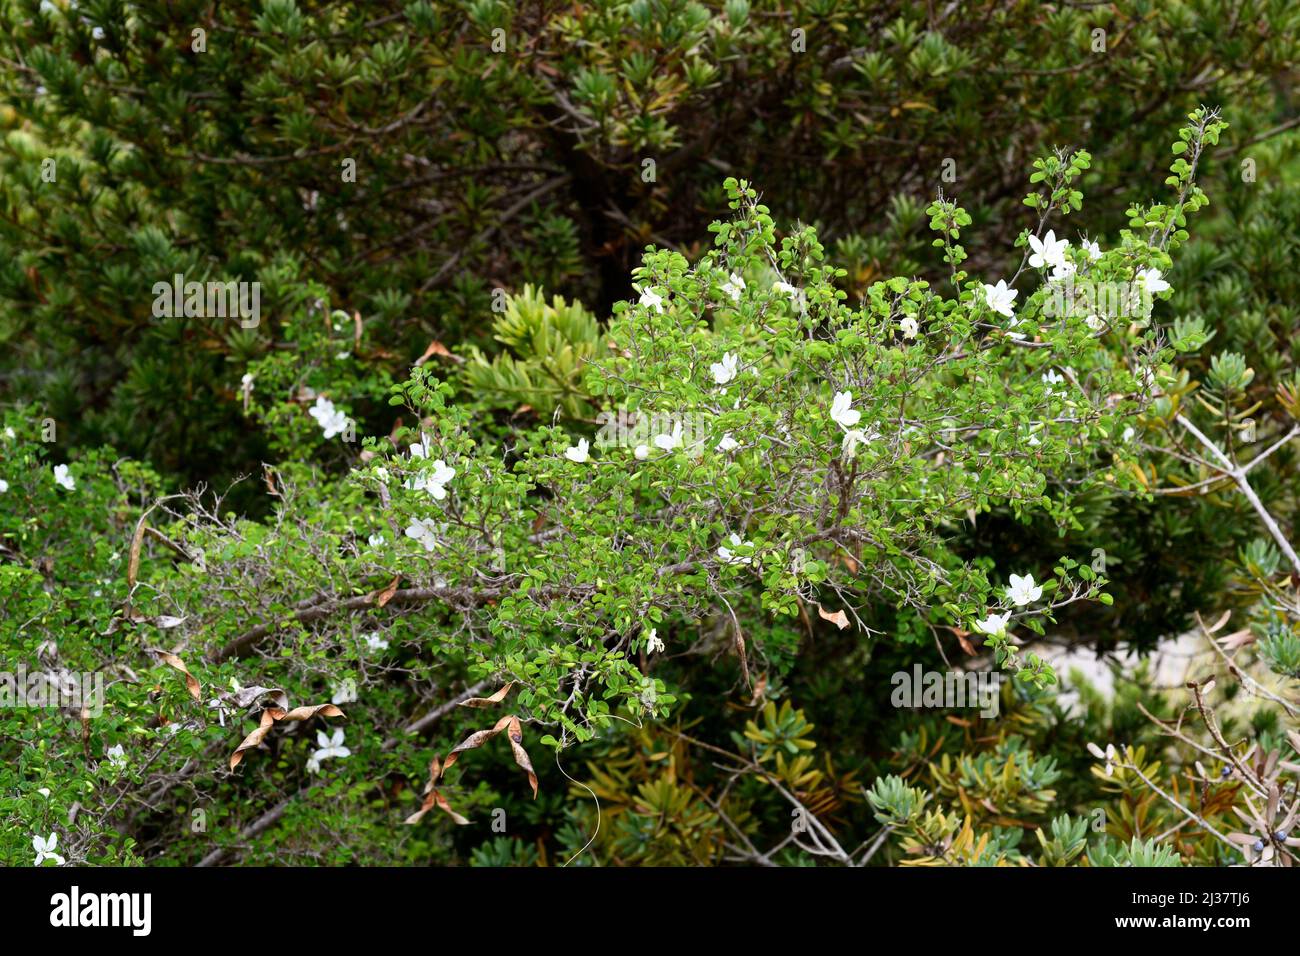 Natal bahuinia (Bahuinia natalensis) ist ein immergrüner Strauch aus Südafrika. Blühendes Exemplar. Stockfoto